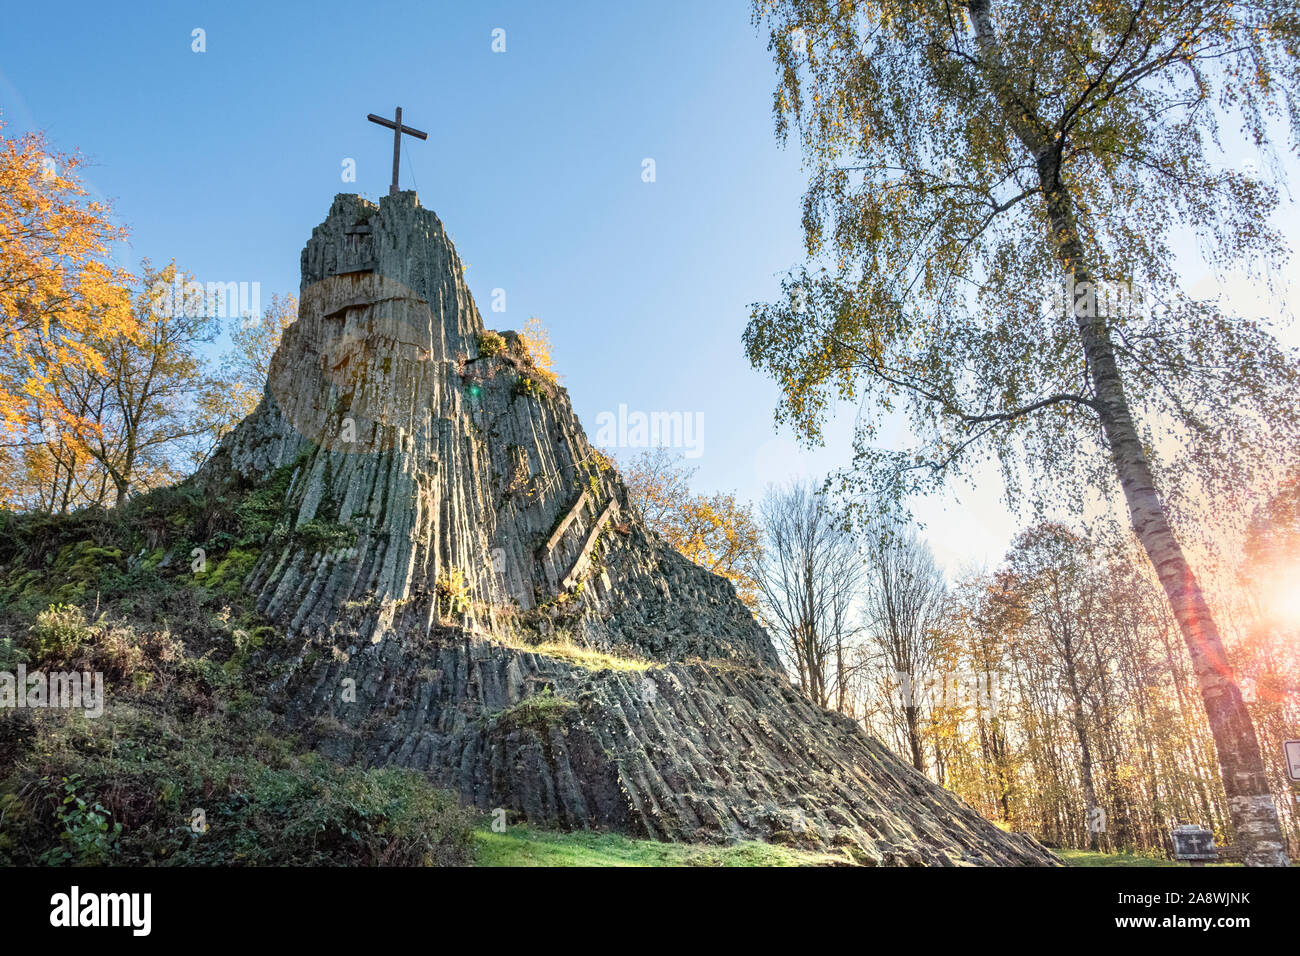 Der Druidenstein ist ein Basaltfels bei Kirchen in Rheinland-Pfalz, der vermutlich bereits von den Kelten als Versammlungsort genutzt wurde. Stock Photo